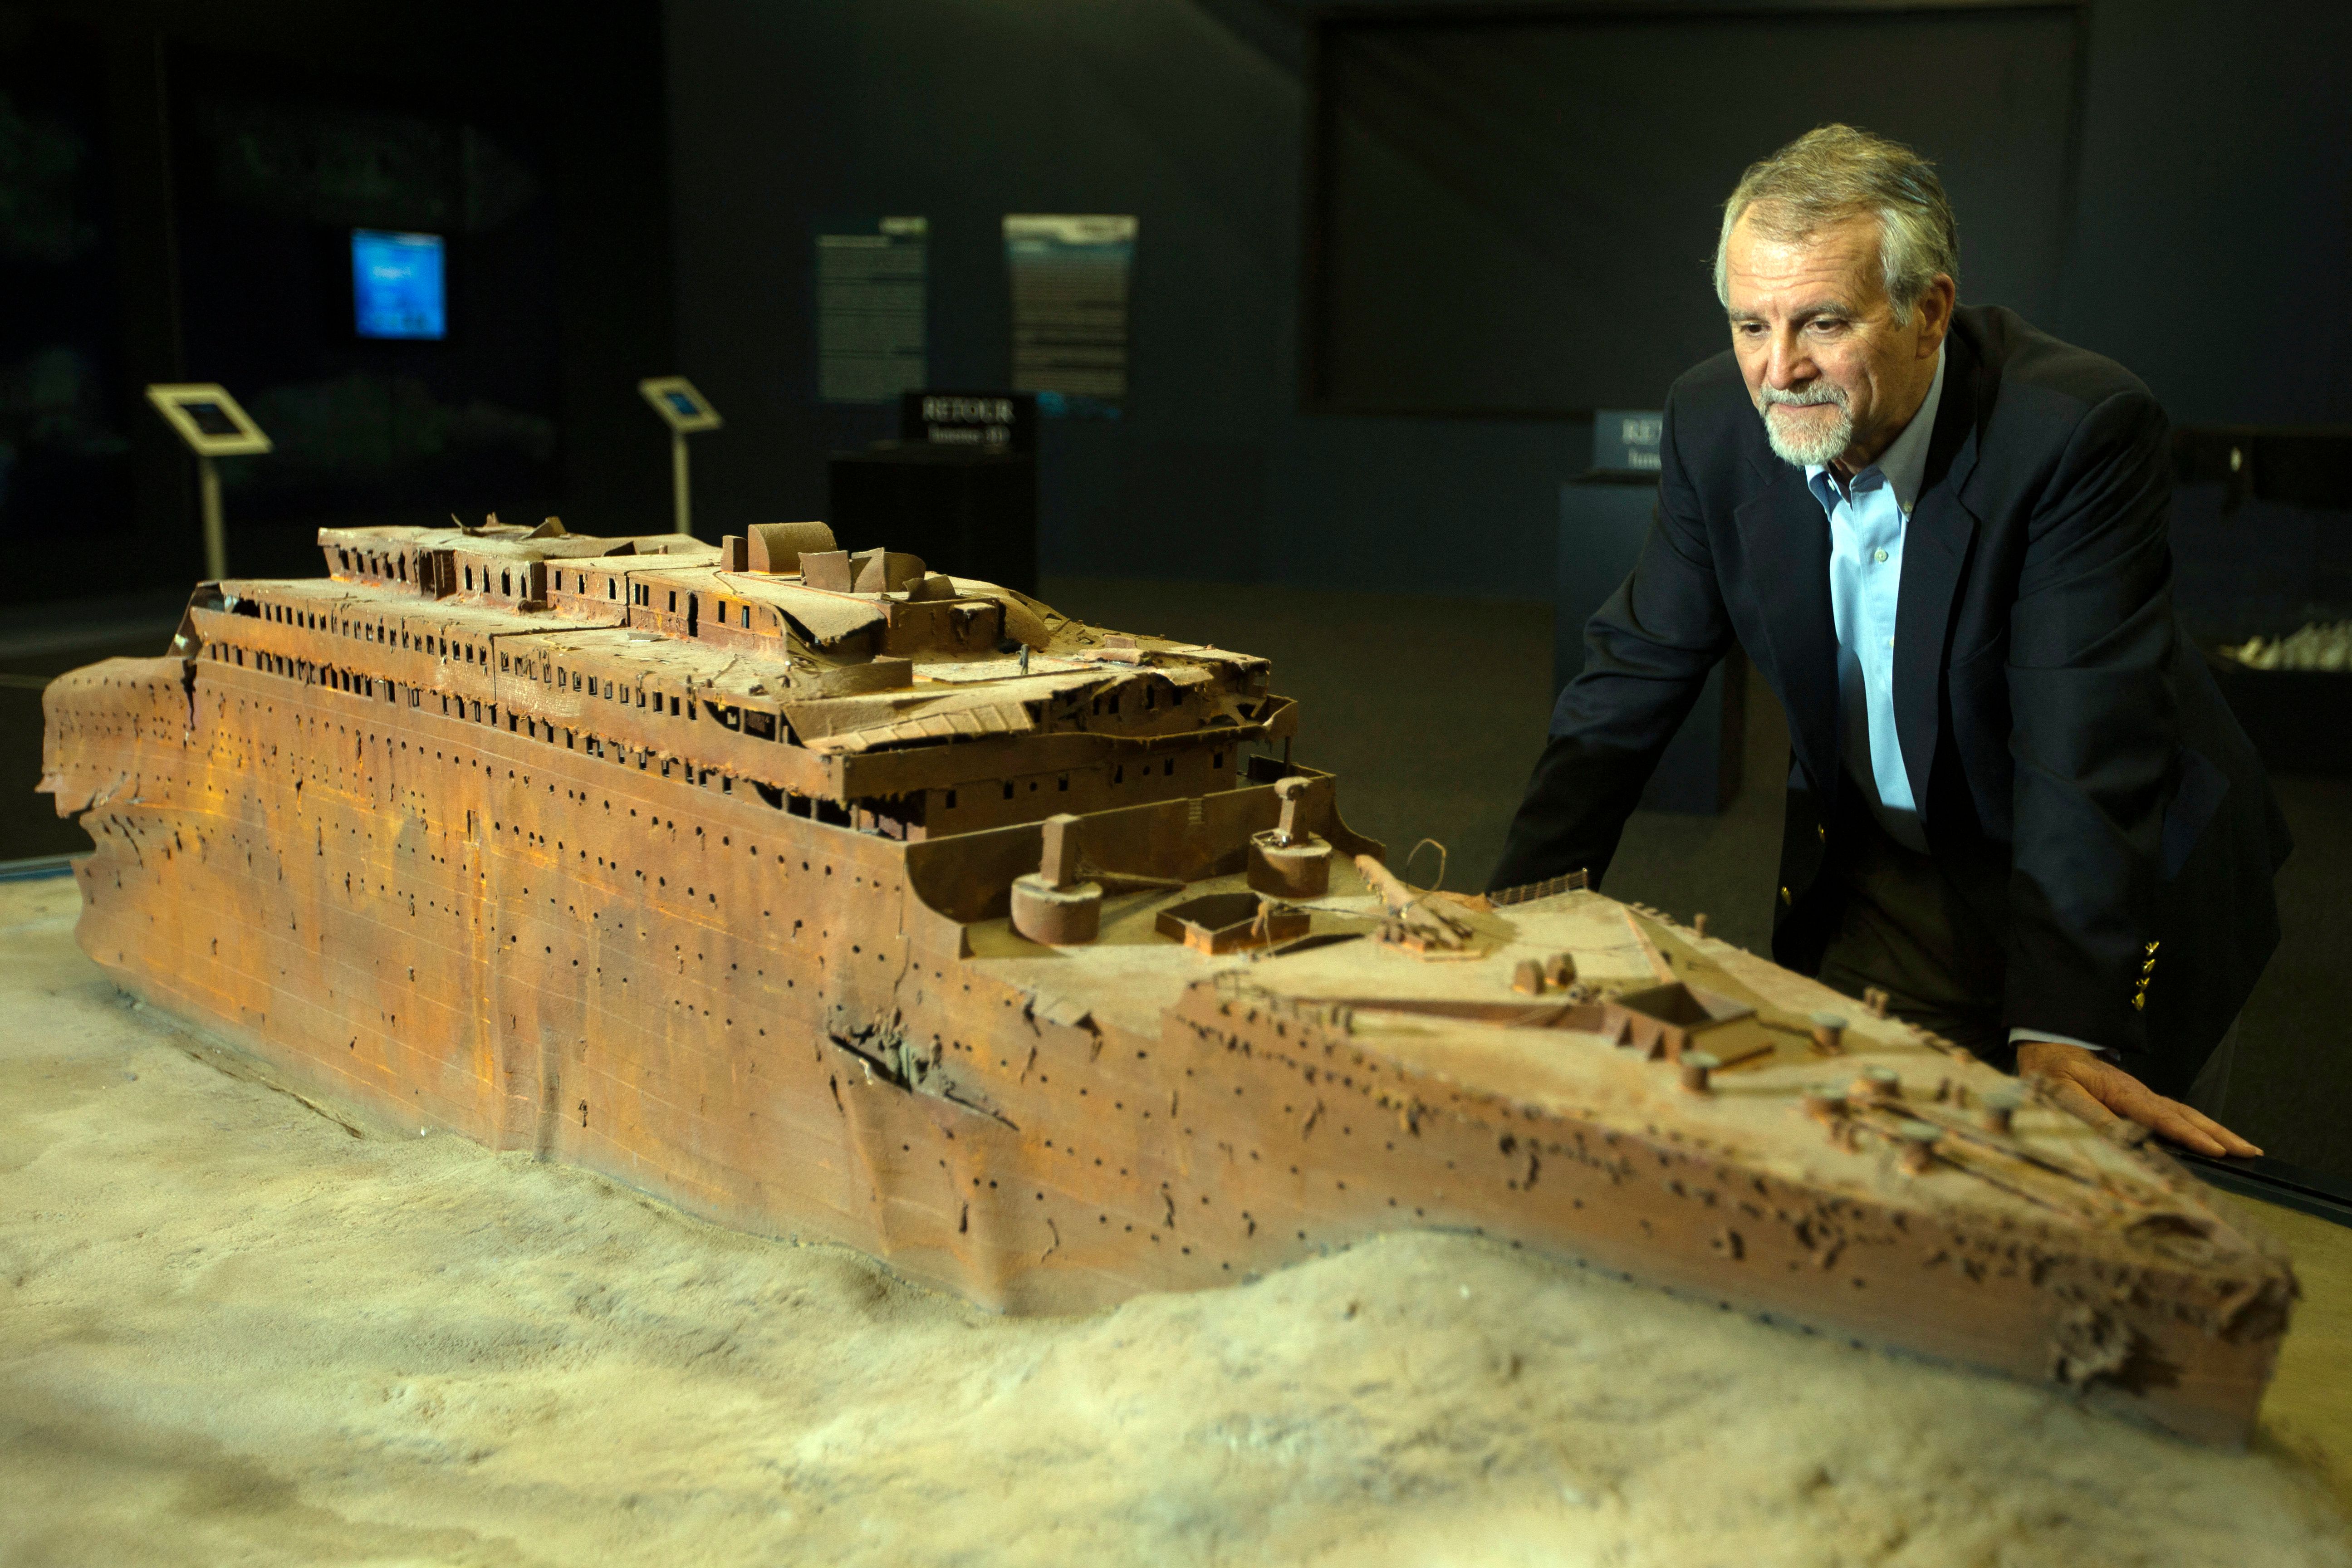 Paul-Henri Nargeolet avec une version miniature du navire coulé à l'intérieur d'une nouvelle exposition, à 'Paris Expo', le 31 mai 2013, à Paris | Source : Getty Images